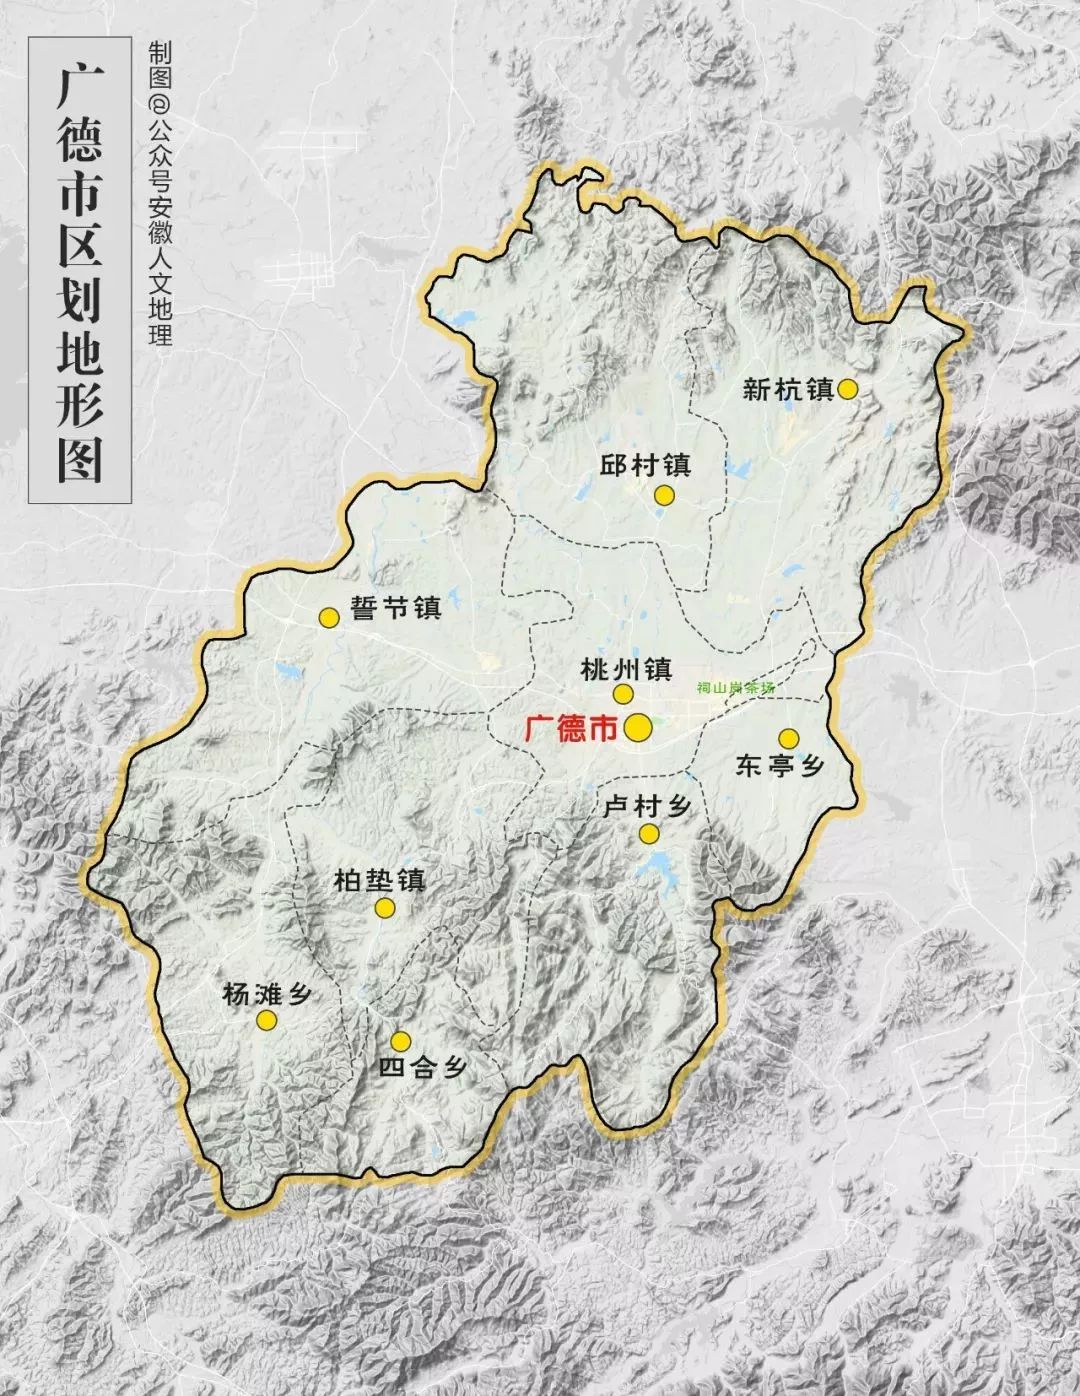 (广德行区划,制图@上骑艺林/安徽人文地理) 广德市总面积有2165